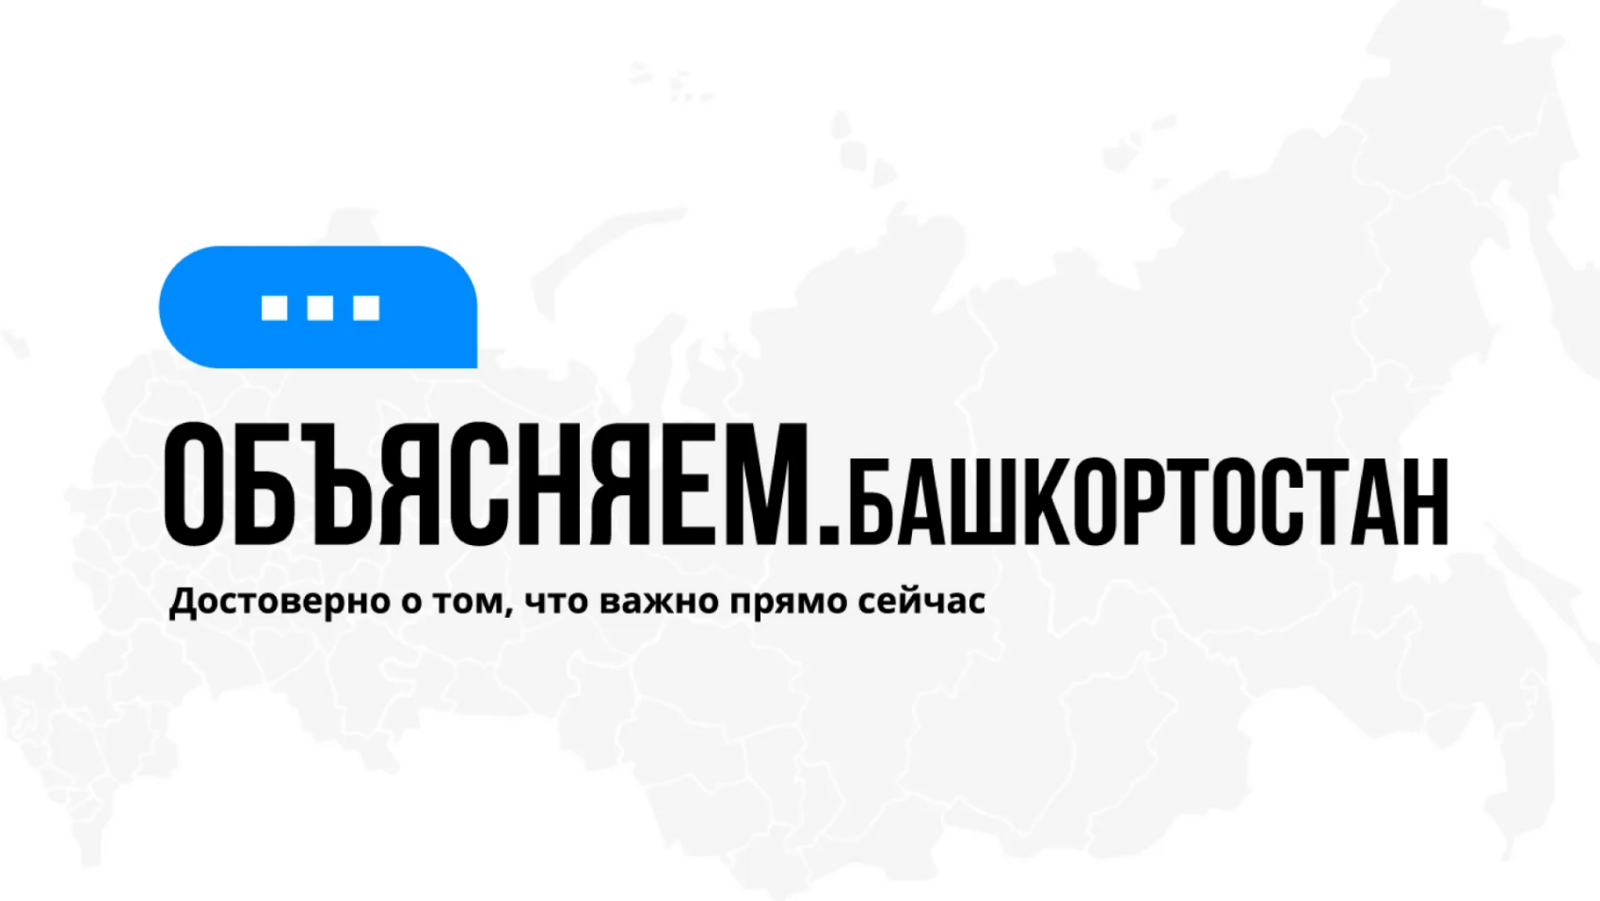 В Башкортостане появился чат-бот, который поможет жителям найти ответы на актуальные вопросы